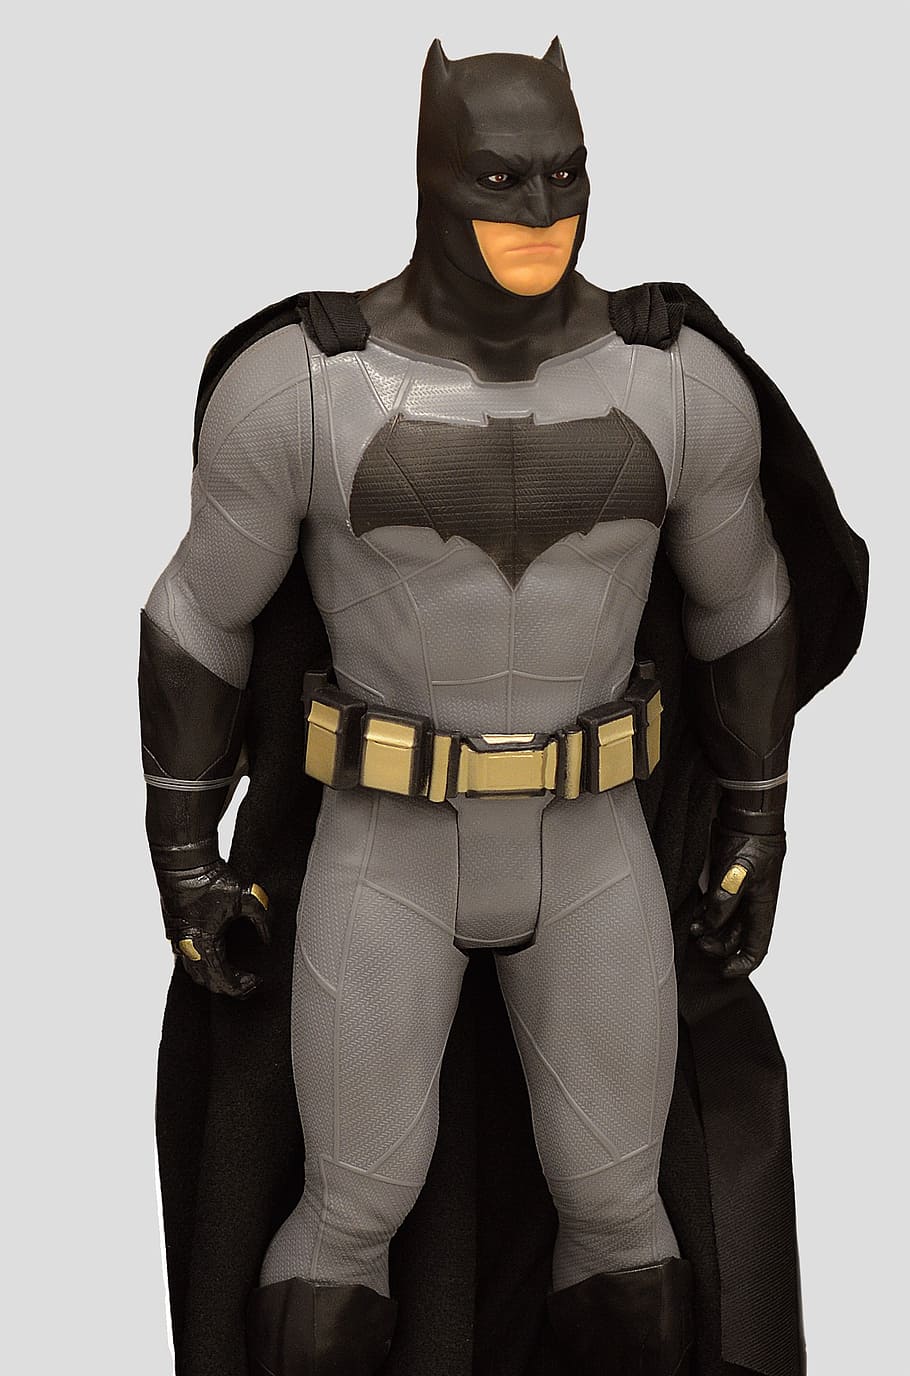 batman action figure, batman, superhero, cape, mask, costume, male, doll, action figure, power